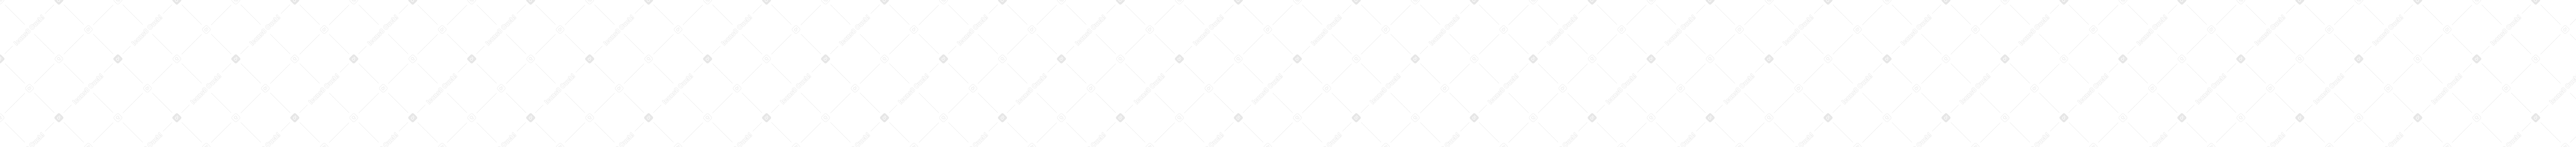 丸太の影の形 PNG、SVG